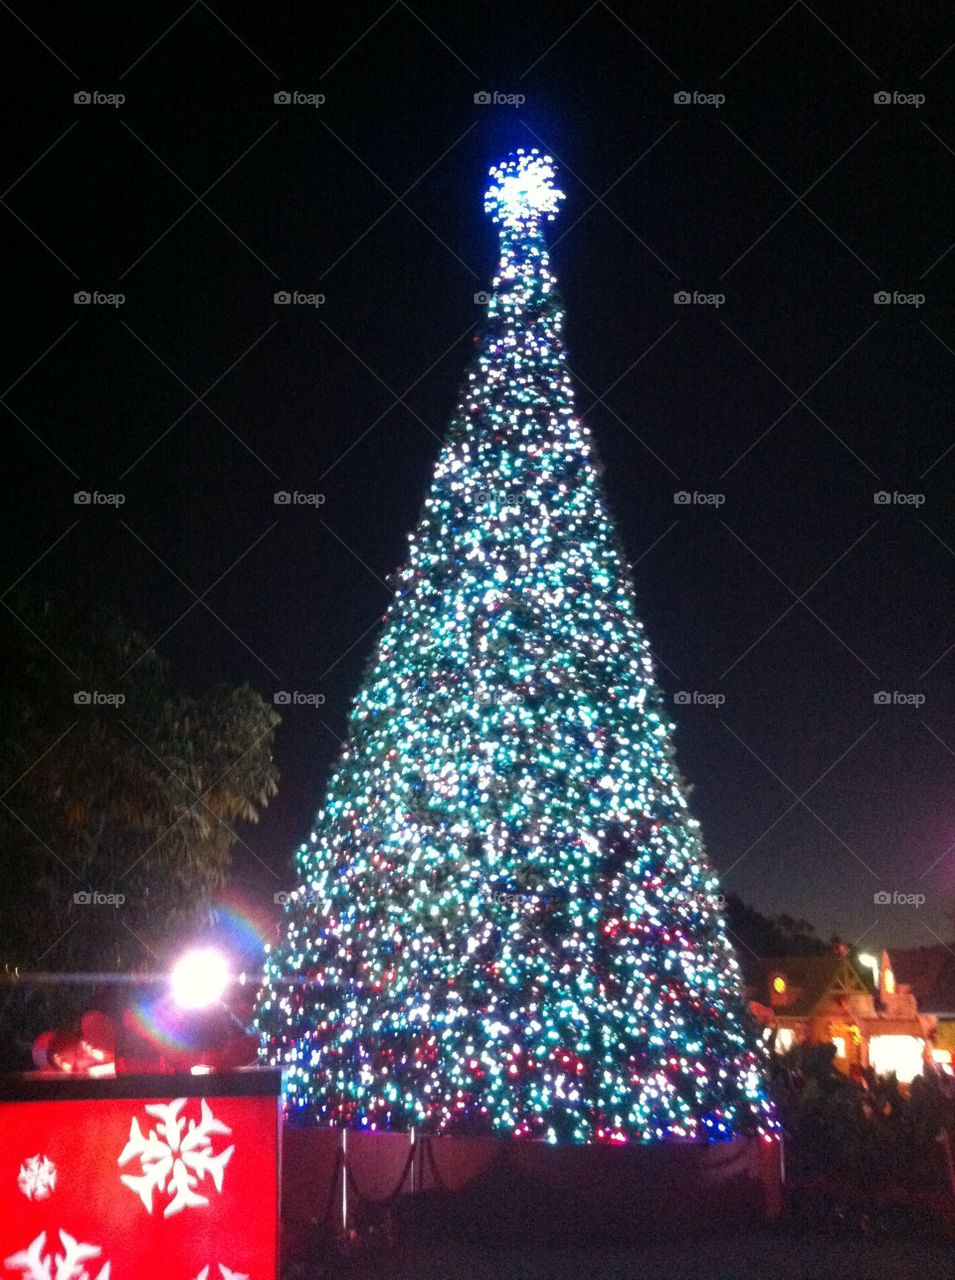 A million Lights on Xmas Tree